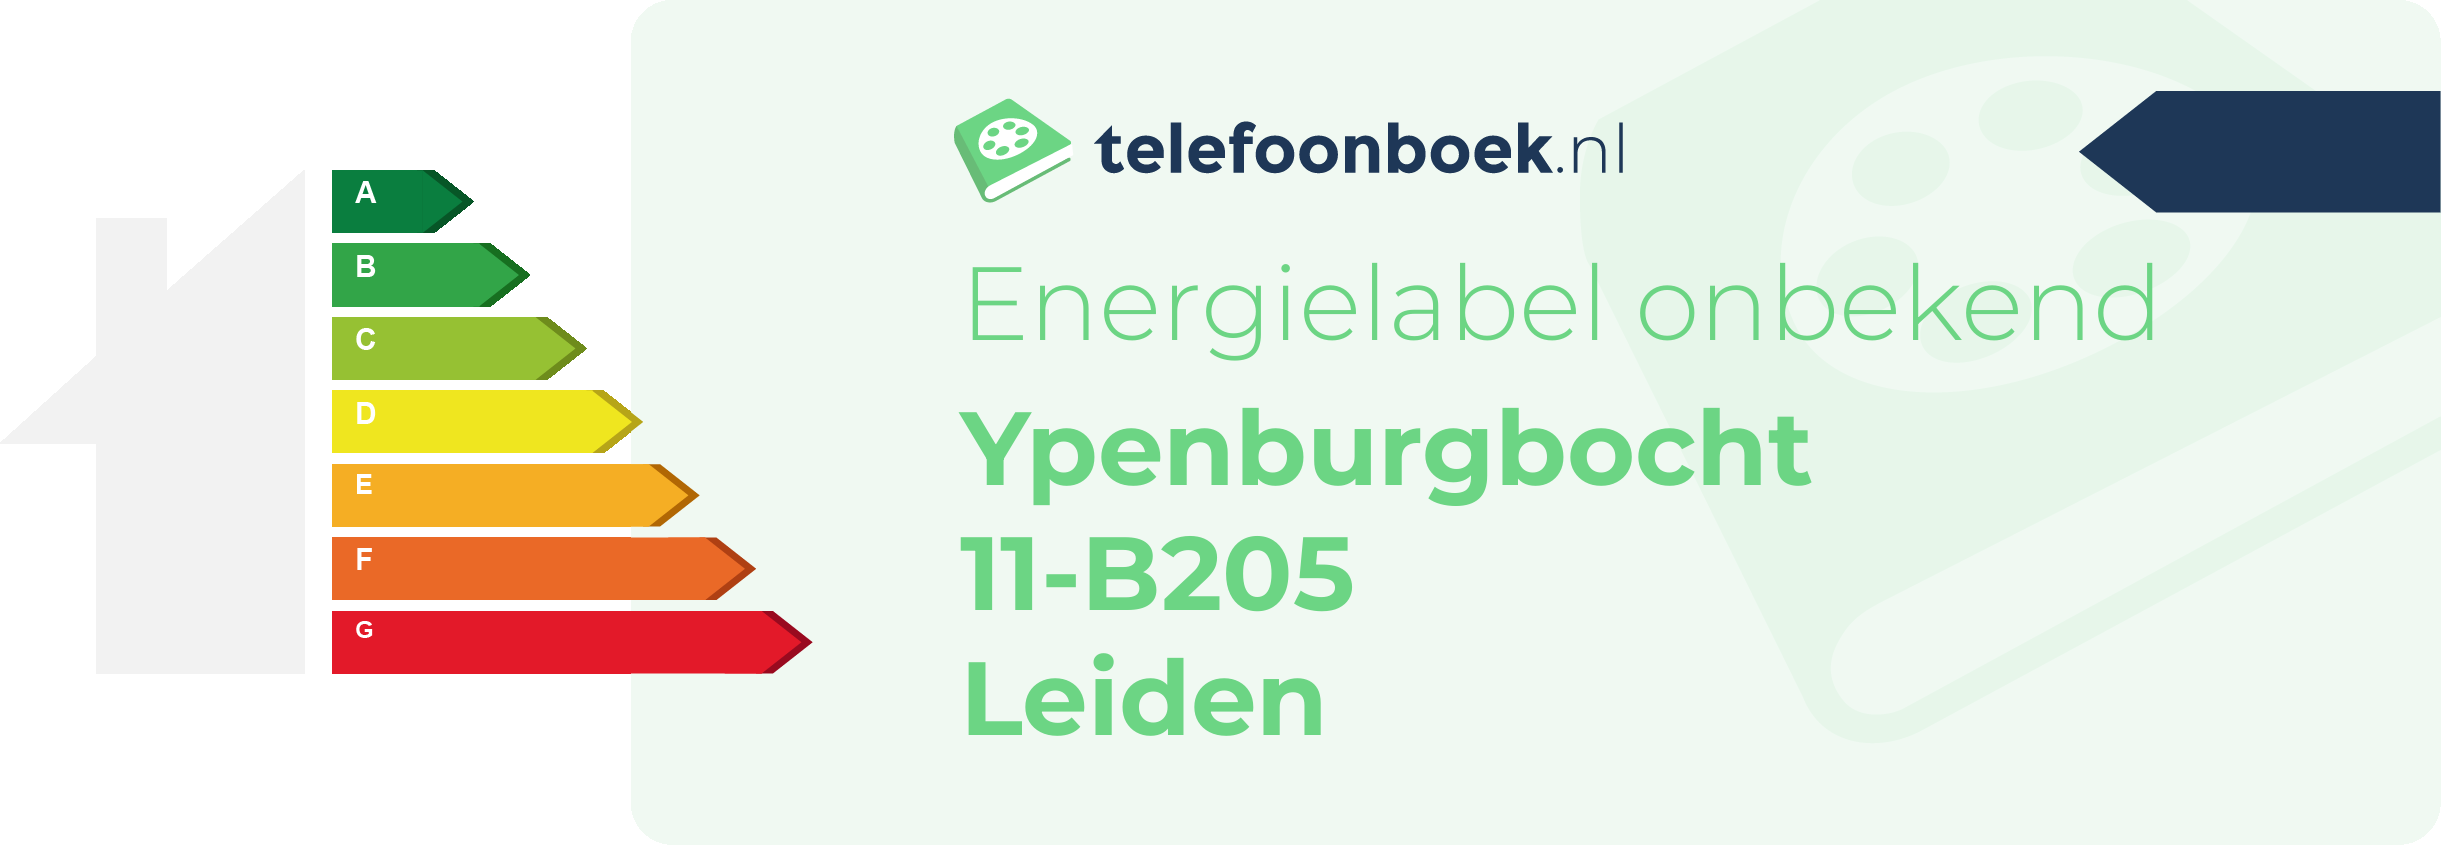 Energielabel Ypenburgbocht 11-B205 Leiden